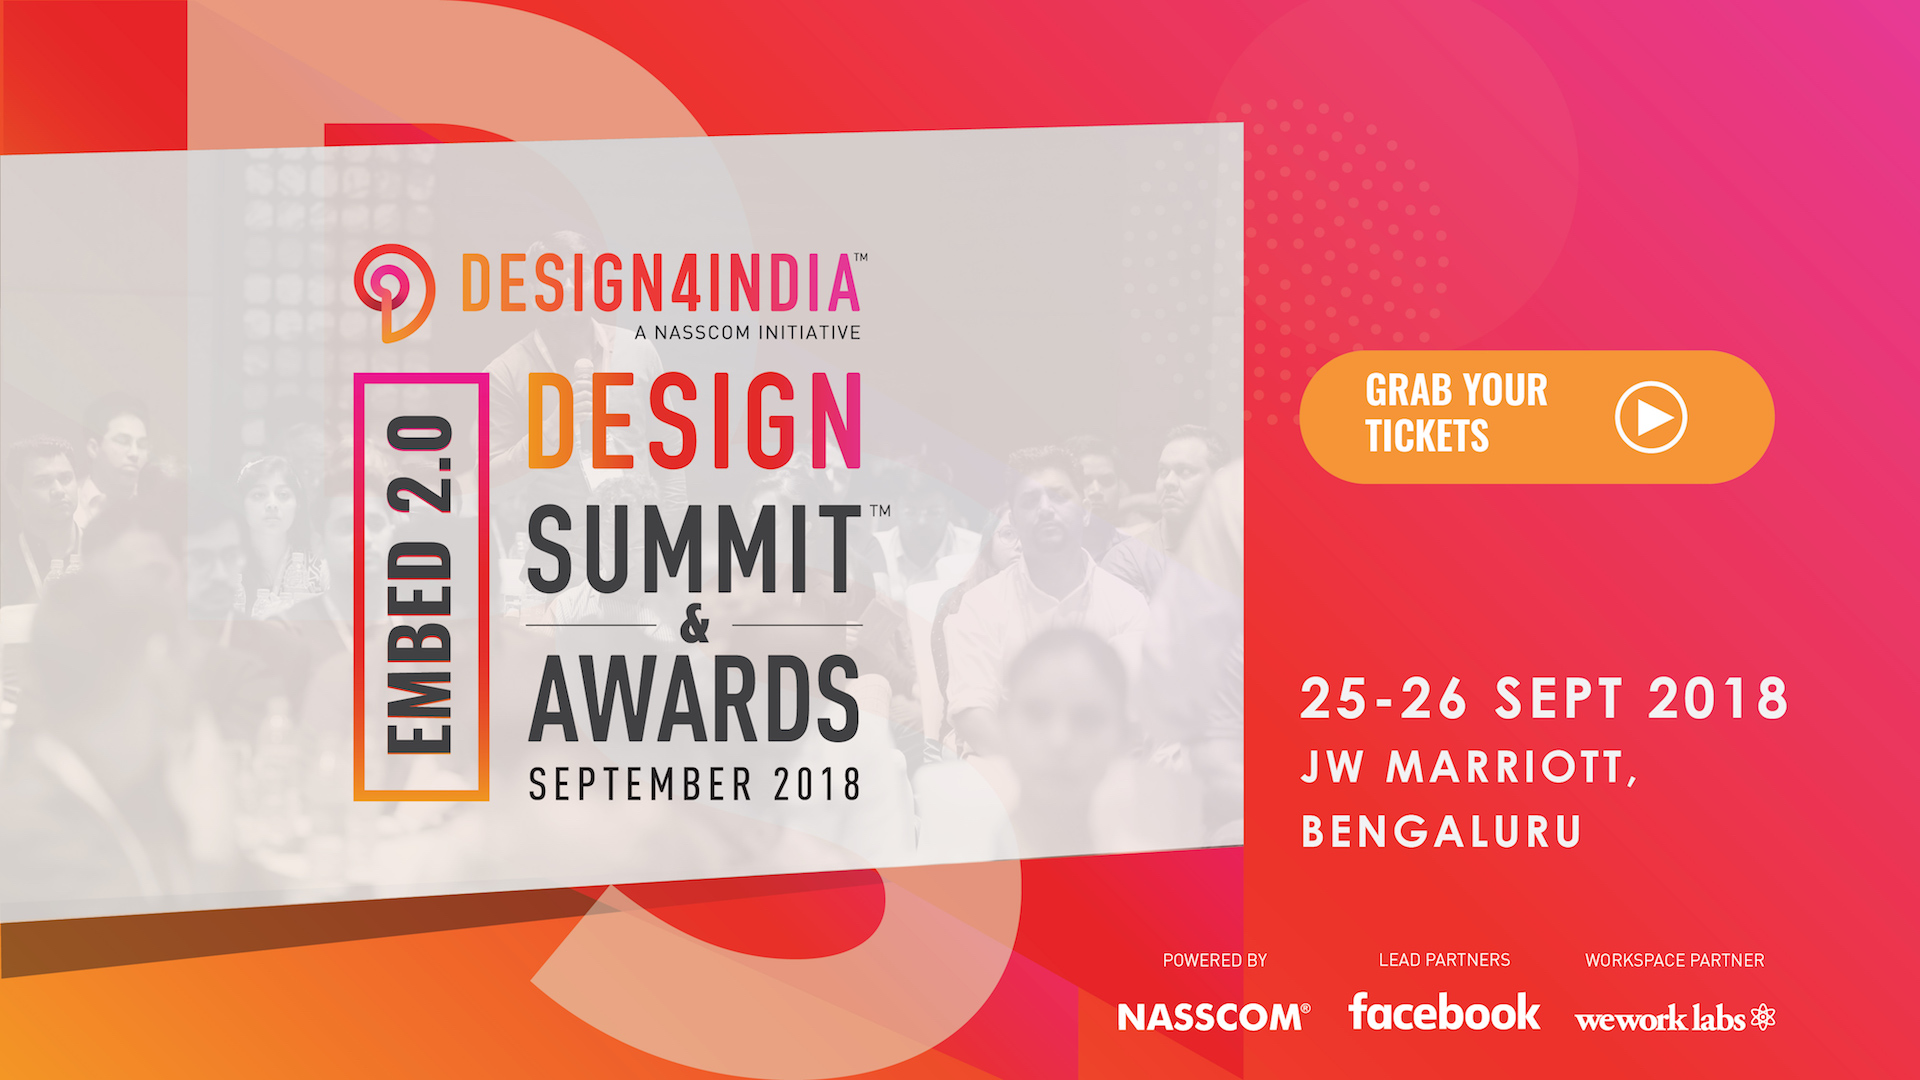 Nasscom Design4india - Design Summit & Awards 2018, Bangalore, Karnataka, India